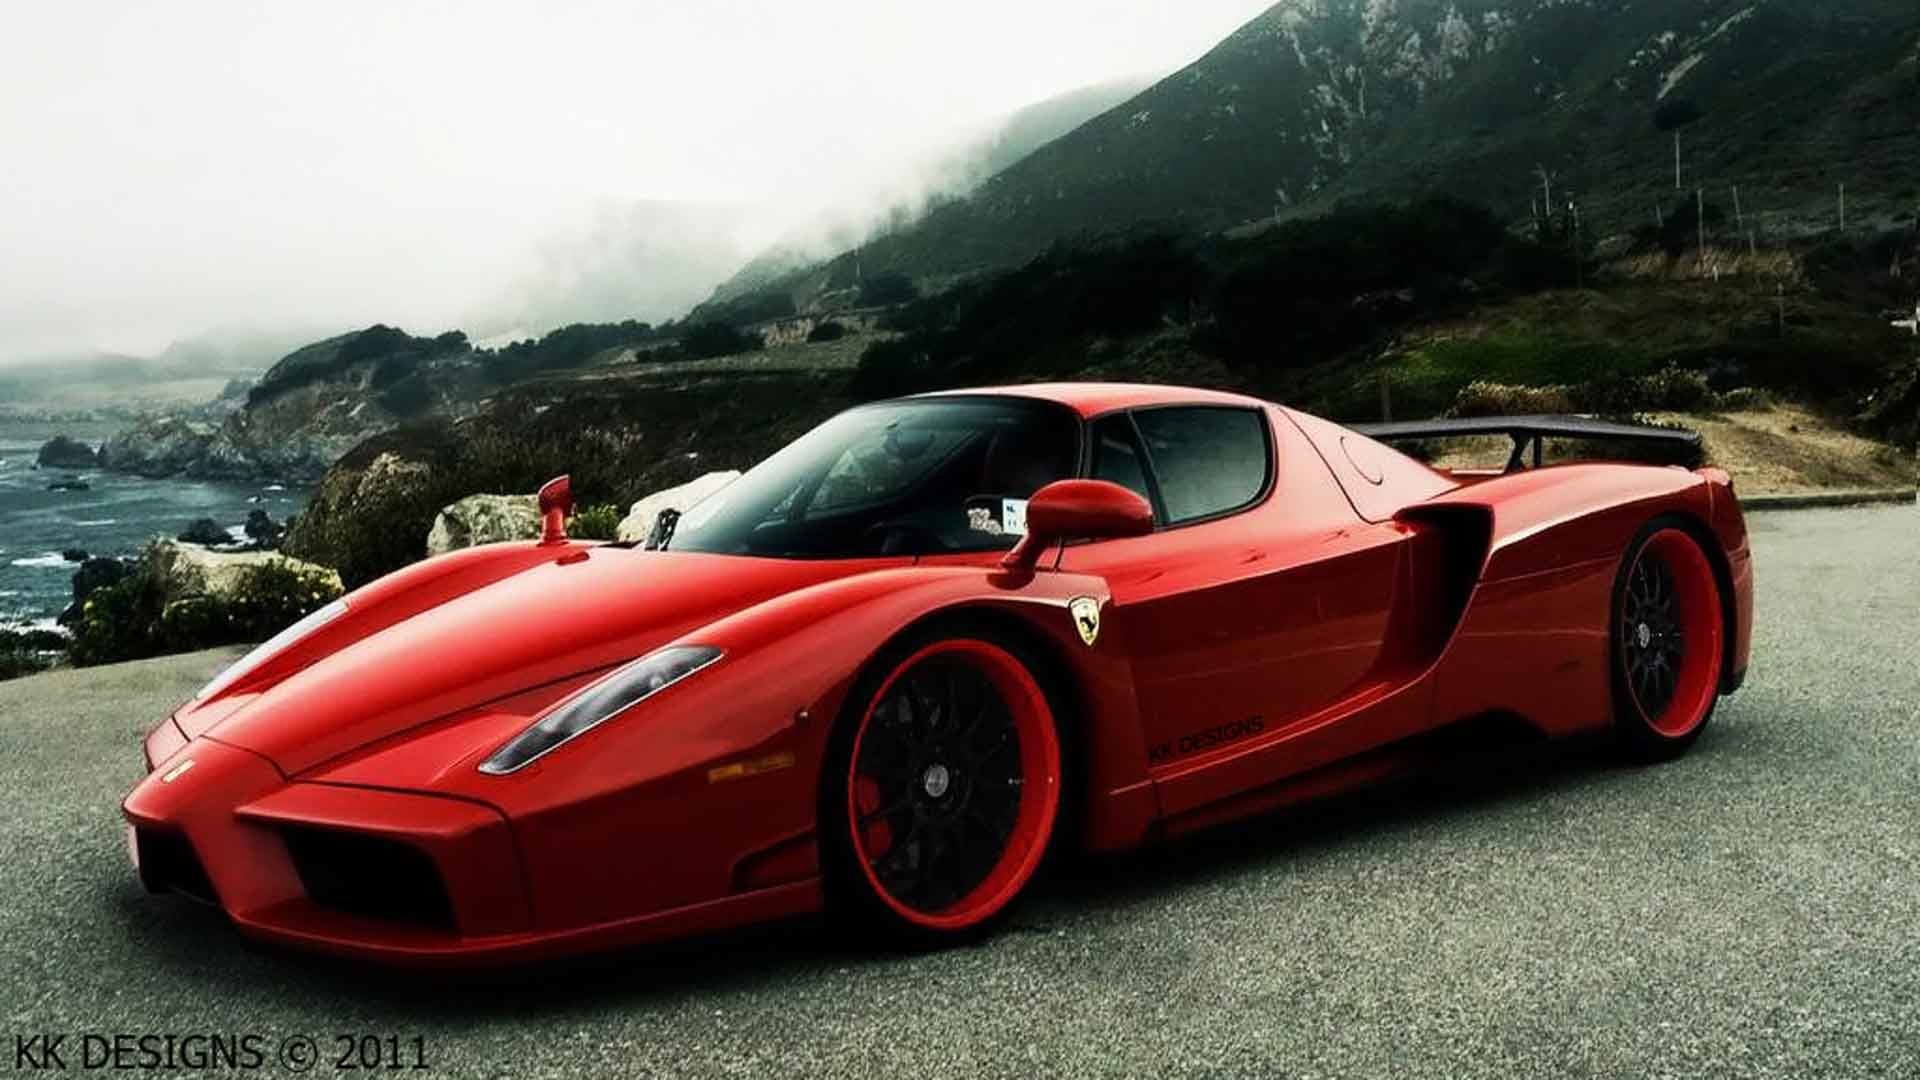 Ferrari hype